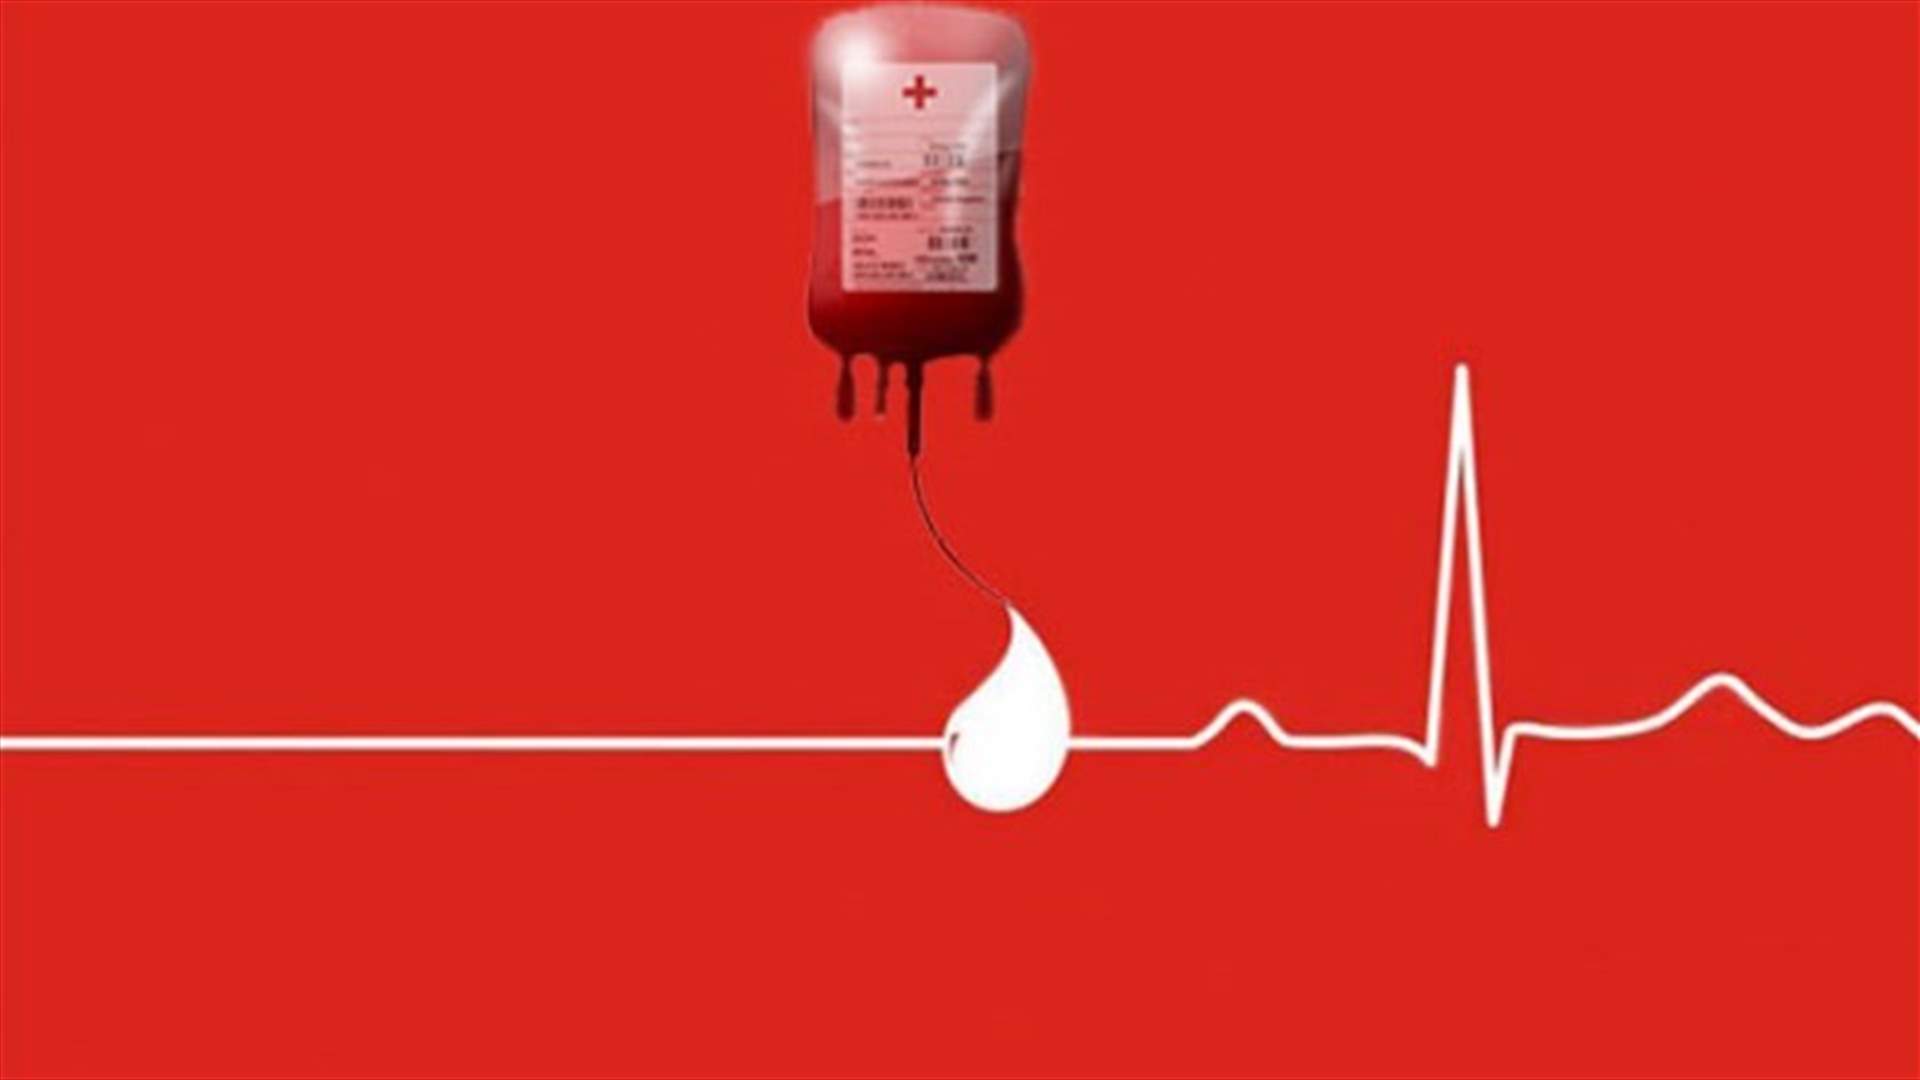 مريض في مستشفى الشرق الأوسط بحاجة ماسة إلى بلاكيت دم من فئة +O للتبرع الاتصال على الرقم 71/715816